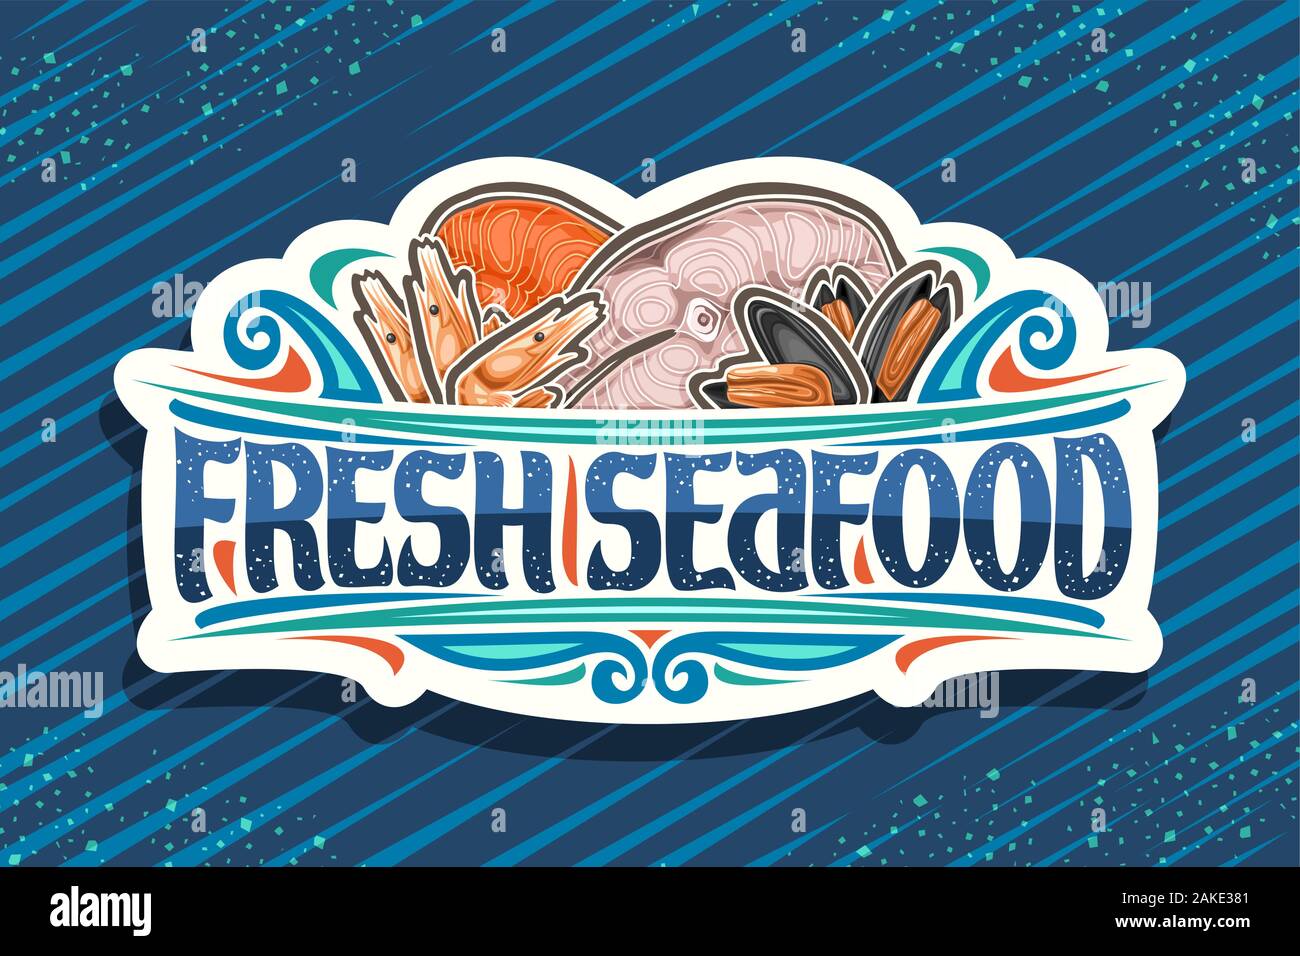 Vektor logo für frische Meeresfrüchte, weiß dekorative Schild mit der Abbildung der geschnittenen Teile der sortierten Fische, Gekochte Garnelen und Muscheln, Bürste Stock Vektor